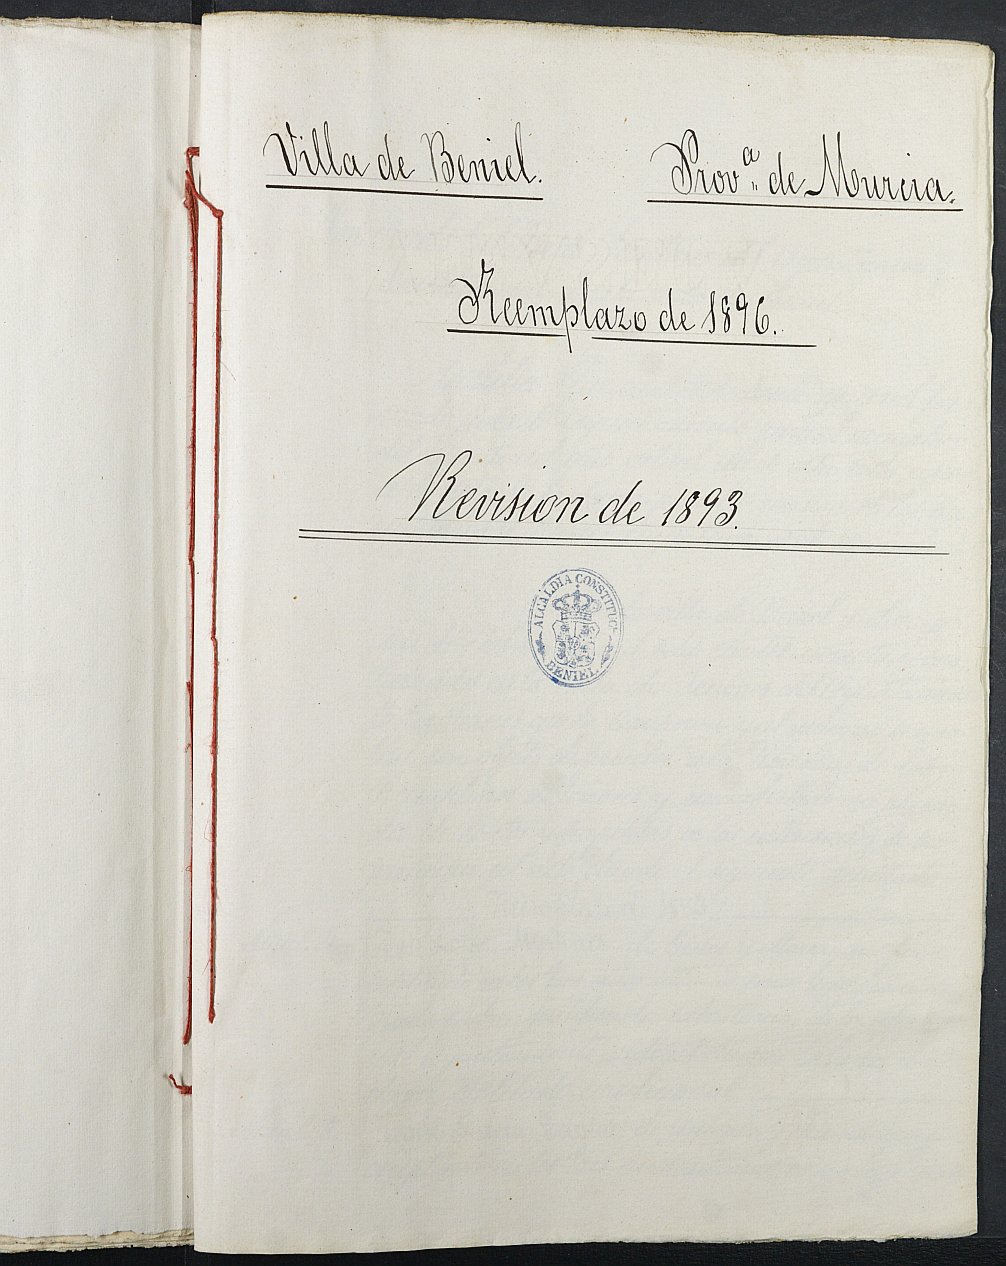 Copia certificada del expediente general de Quintas del Ayuntamiento de Beniel del reemplazo de 1893.